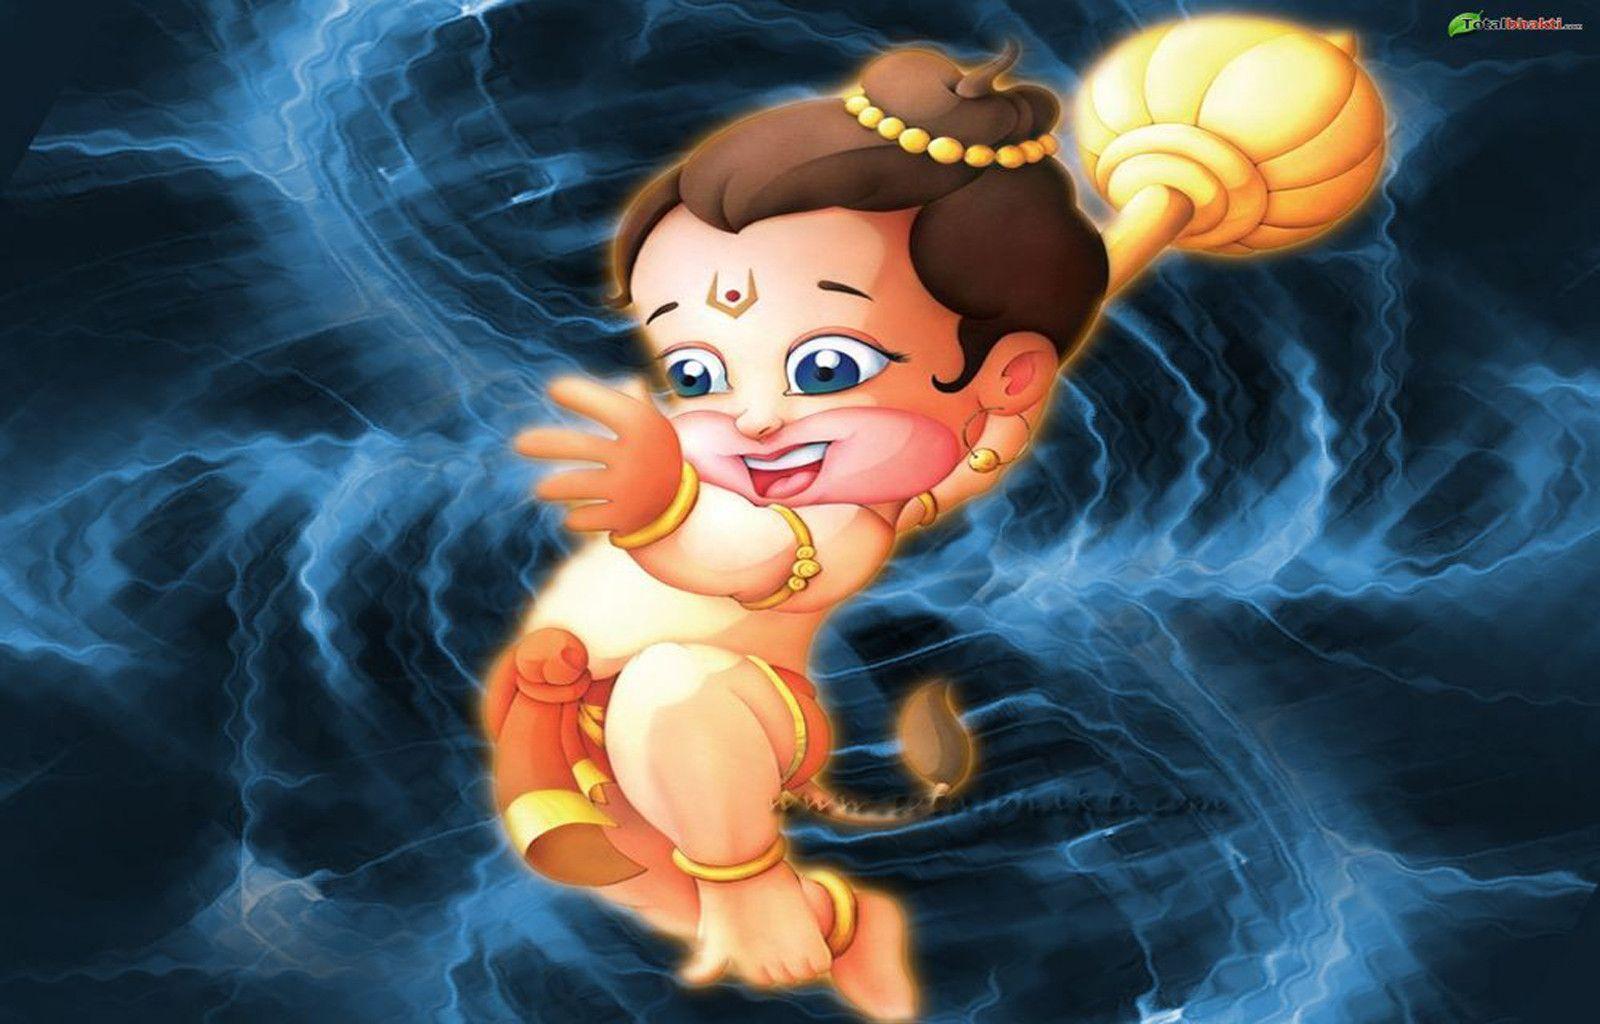 Animated Hanuman Wallpapers - Wallpaper ...